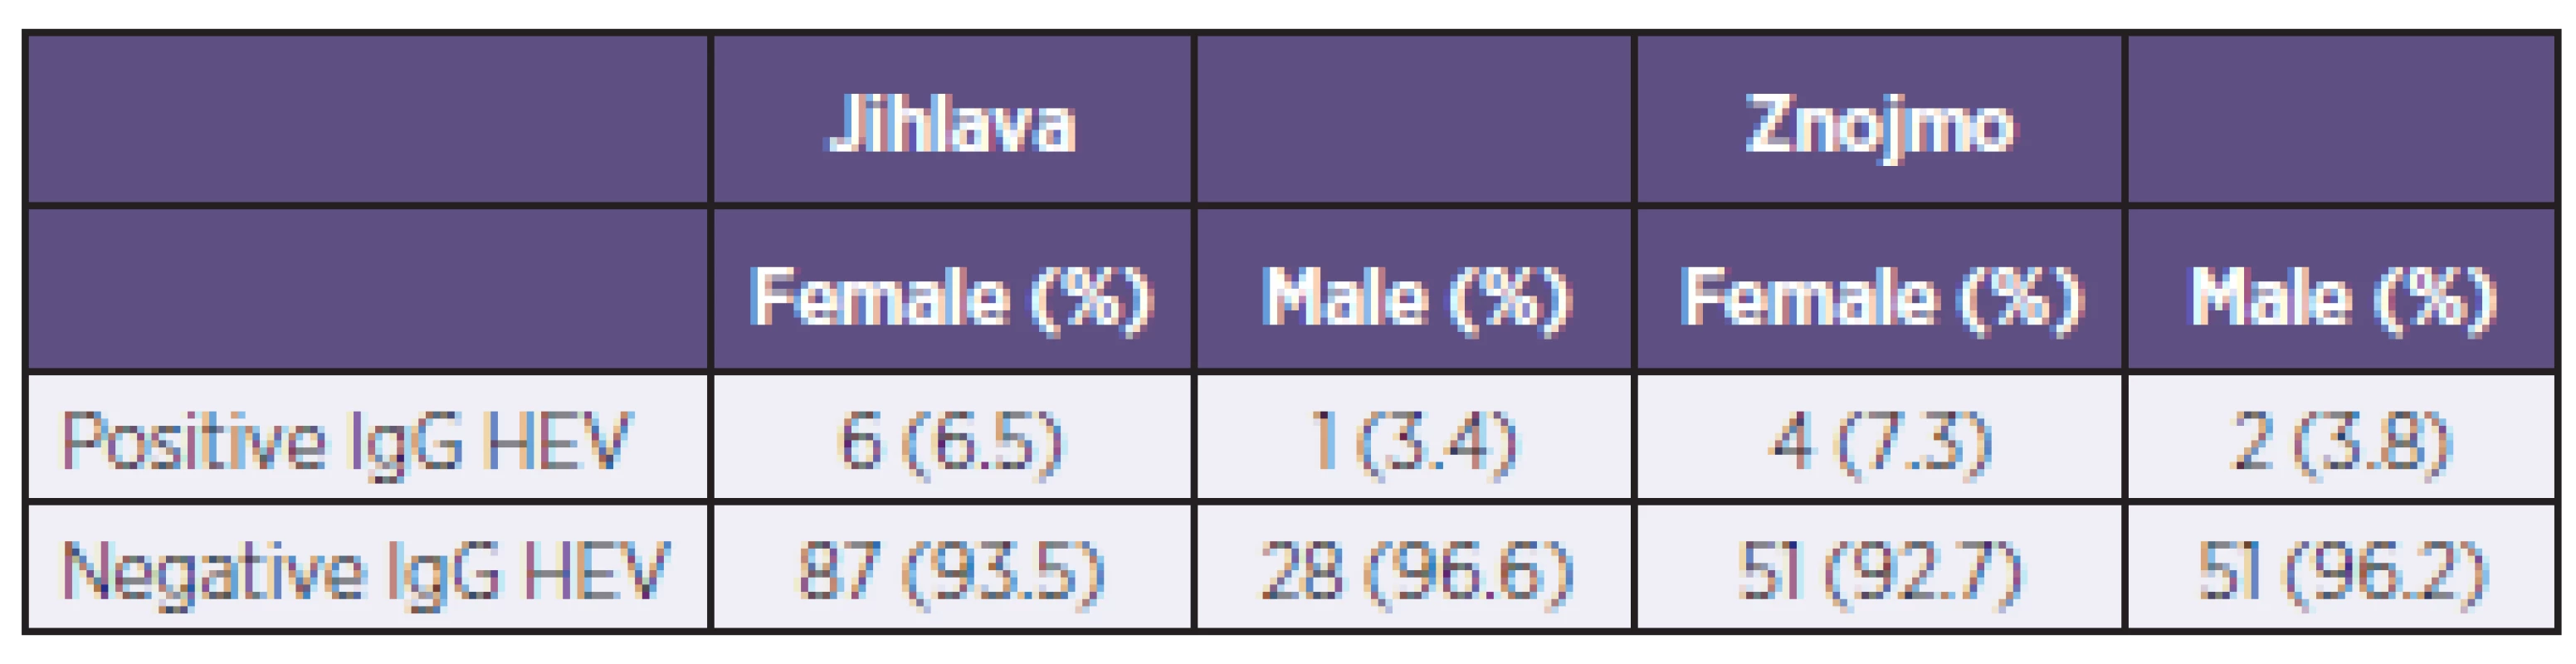 The number of positive and negative sera according to sex and district
Tabulka 1. Počet pozitivních a negativních sér podle pohlaví a okresu